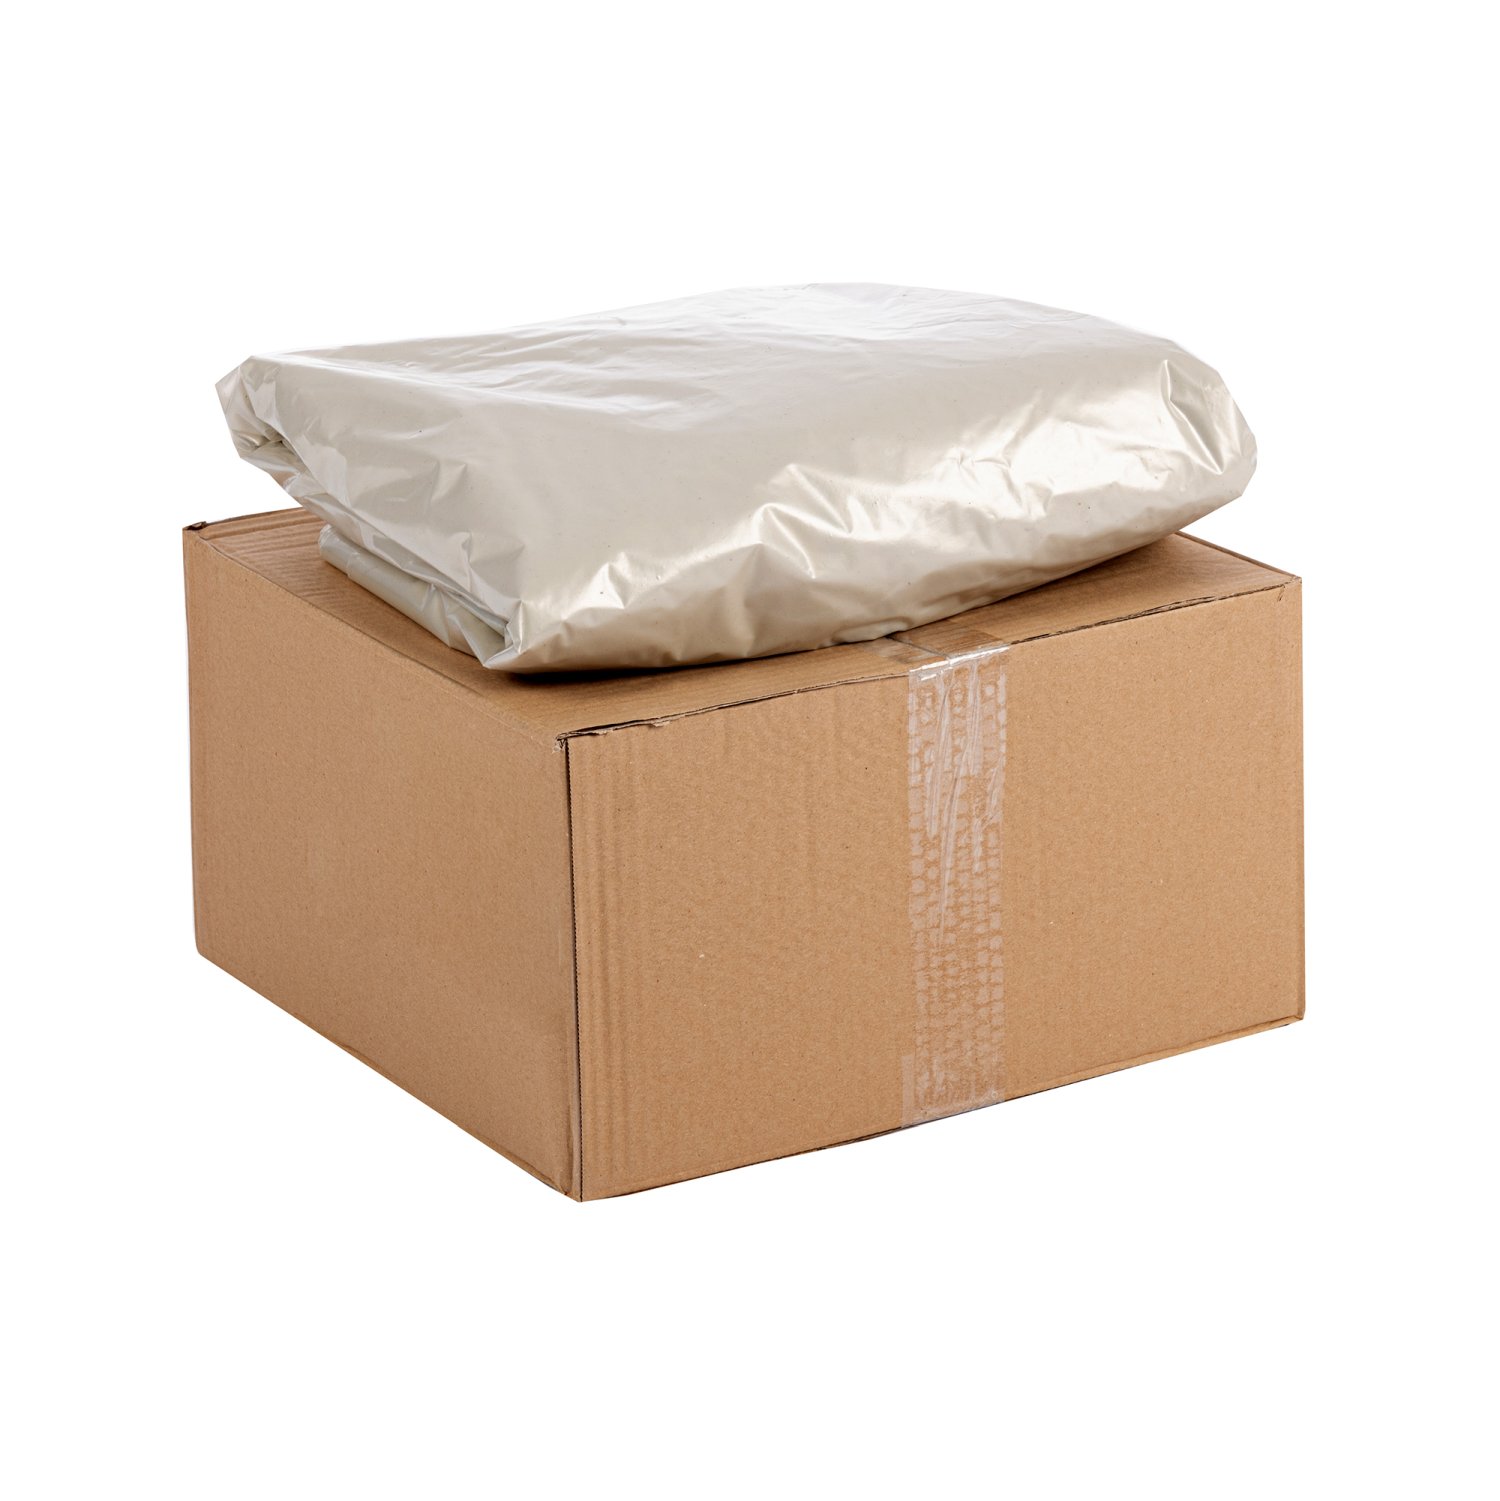 Palletbox zakken Palletboxzakken bestellen
Heeft jouw palletbox een beschermende binnenbekleding nodig om de inhoud te beschermen tegen vuil, vocht en stof? Knapzak biedt de perfecte oplossing: palletbox zakken. Deze zakken zijn specifiek ontworpen voor palletboxen en zorgen ervoor dat de box schoon blijft. Ideaal voor opslag, transport en/of het verzamelen van producten en goederen. Gemaakt van scheurbestendig materiaal en ruim genoeg om goed af te sluiten aan de bovenkant.

Ontdek vandaag nog de voordelen van onze palletboxzakken en maak een bewuste keuze voor efficiënte afvalinzameling!